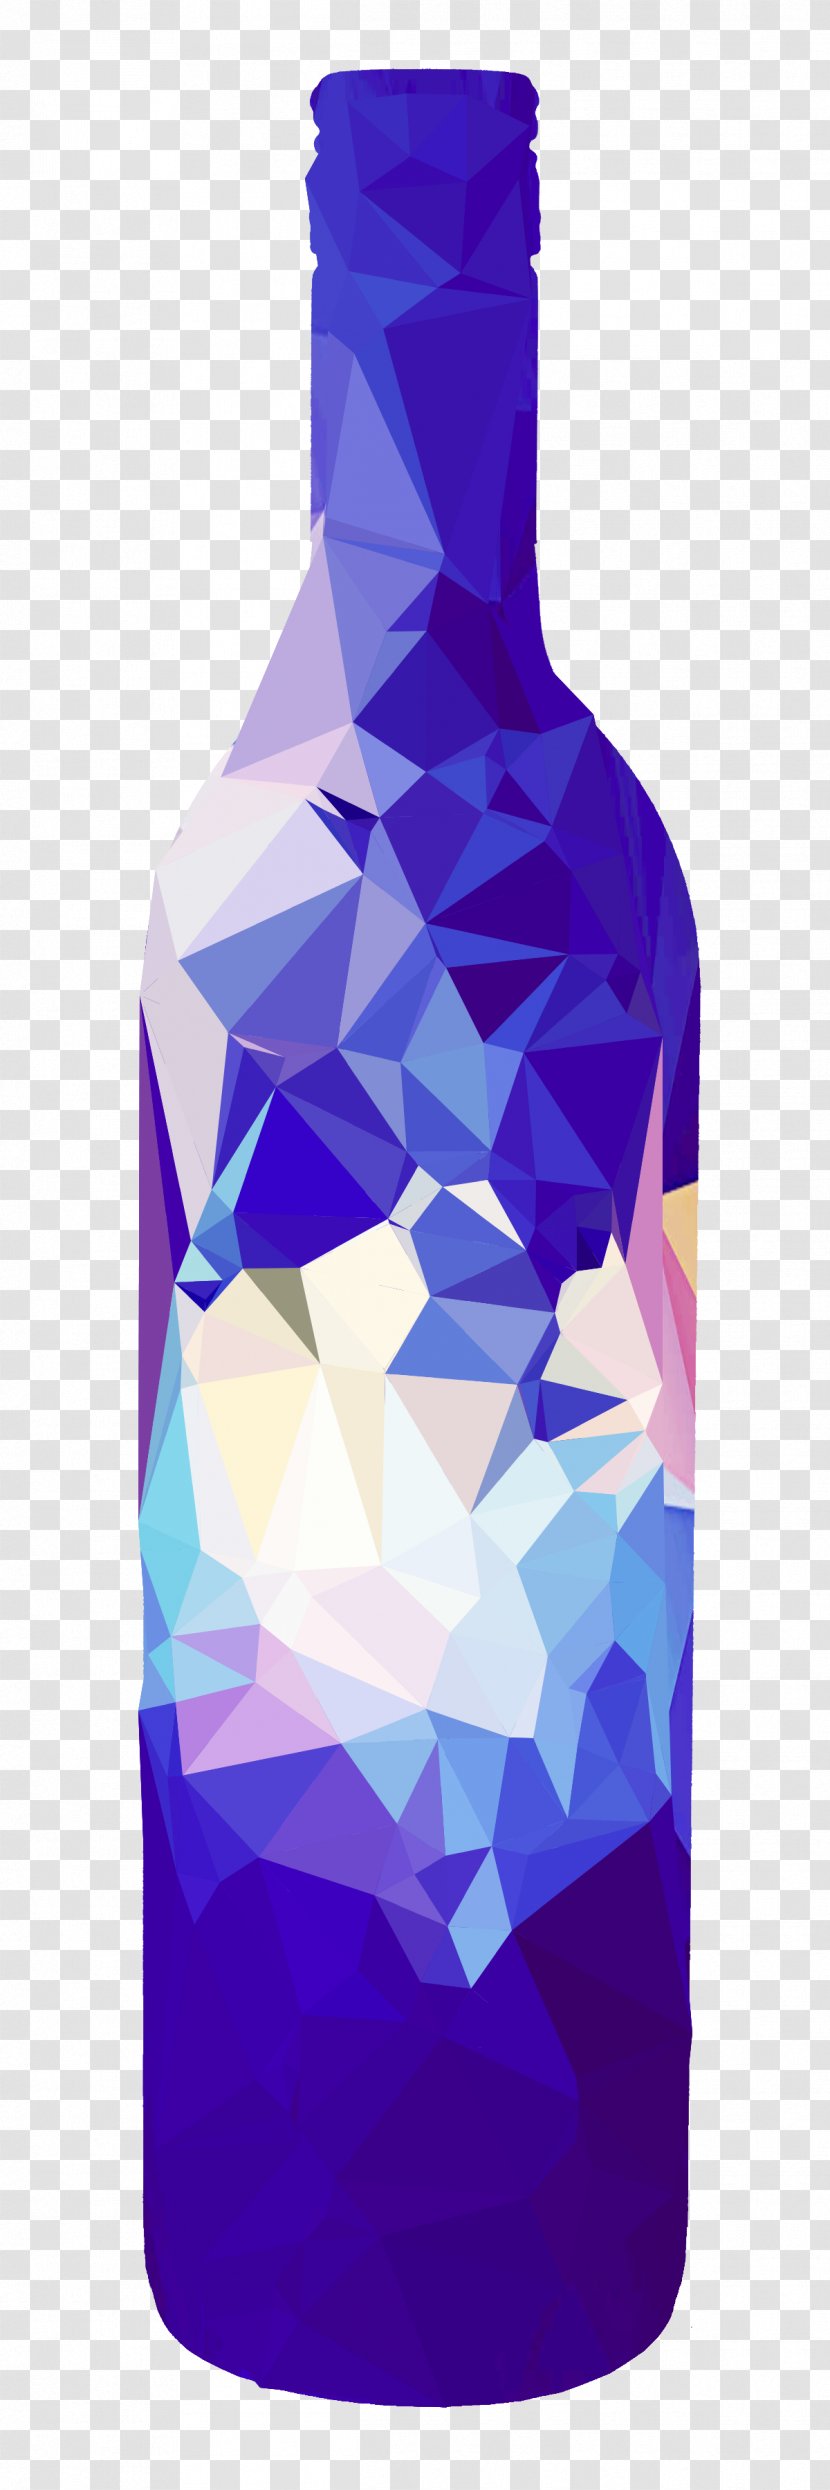 Glass Bottle Water Bottles Cobalt Blue - Triangle - Amethyst Transparent PNG